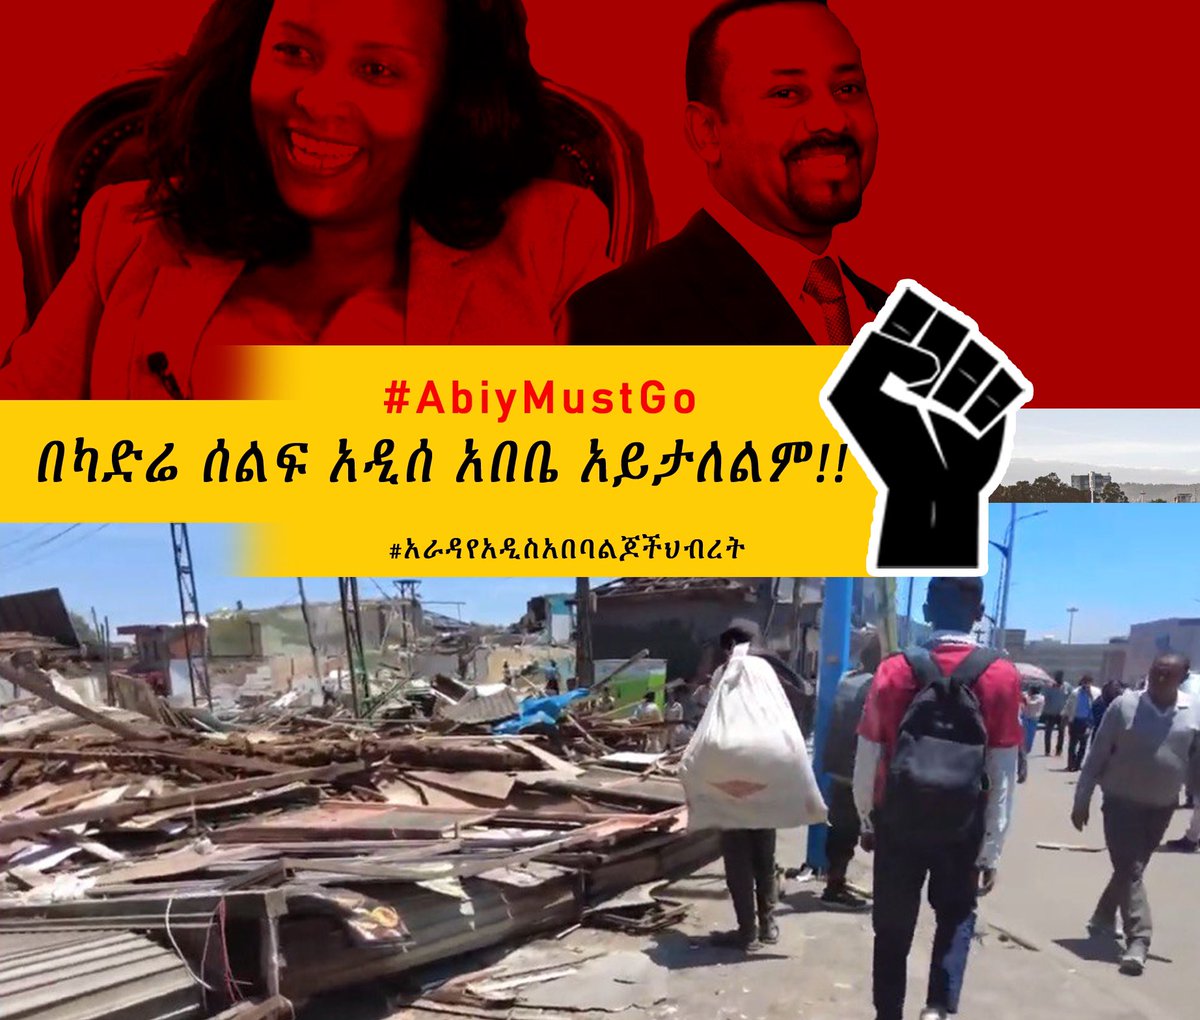 We will take our city addis abeba back ! 
#AradaHibret
#Addisadeba  #AbiyMustGo #AdanechMustGo